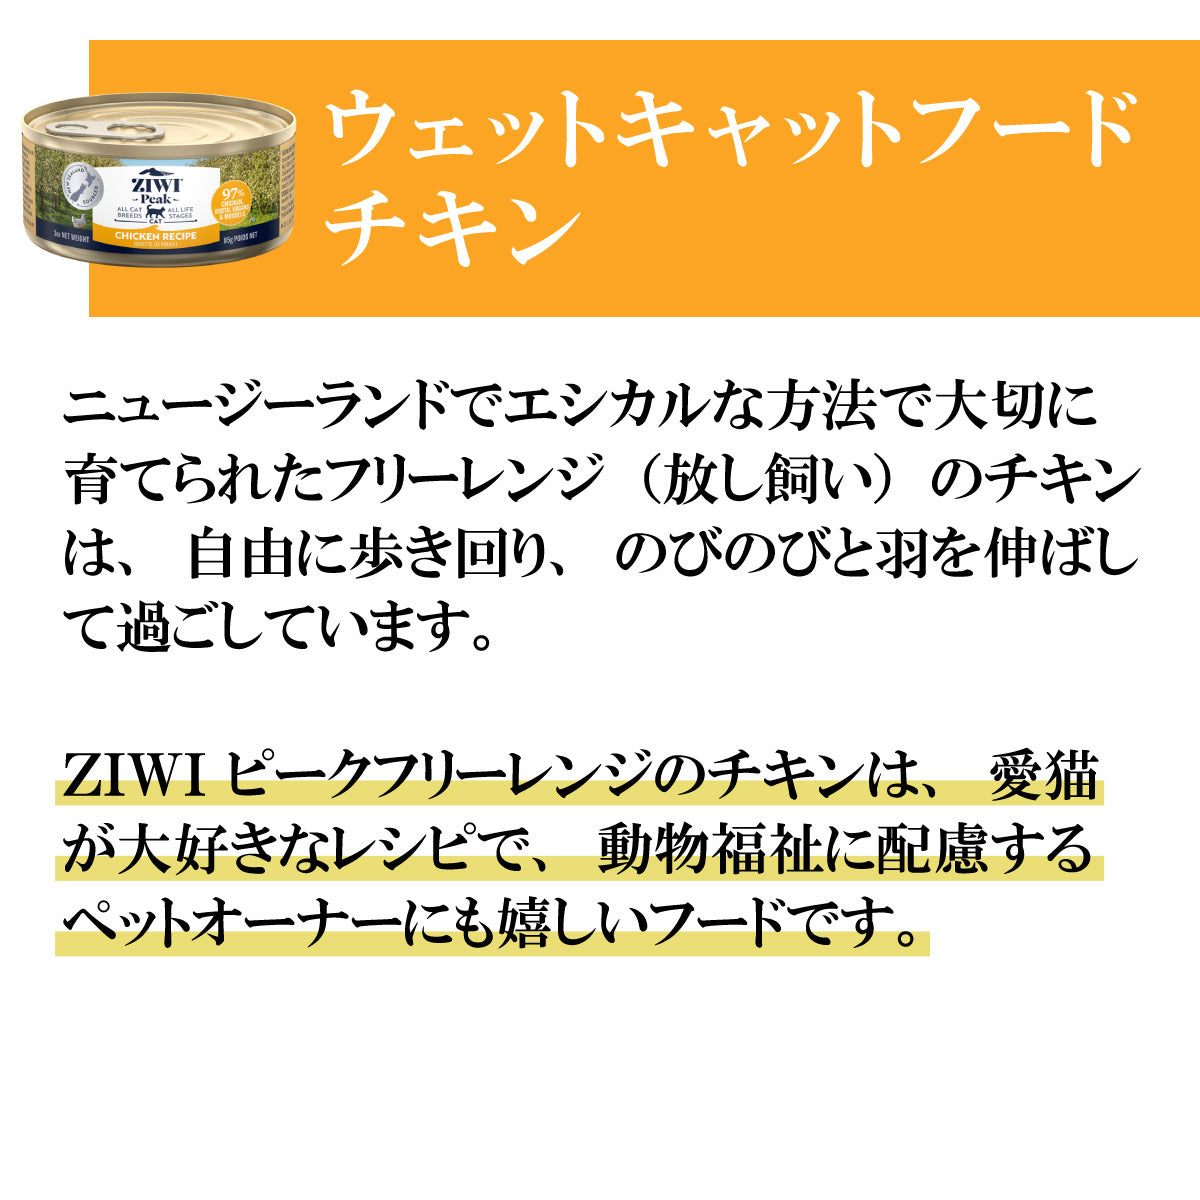 ジウィ ZIWI キャットフード キャット缶 フリーレンジチキン 85g 正規品 無添加 ジウィピーク